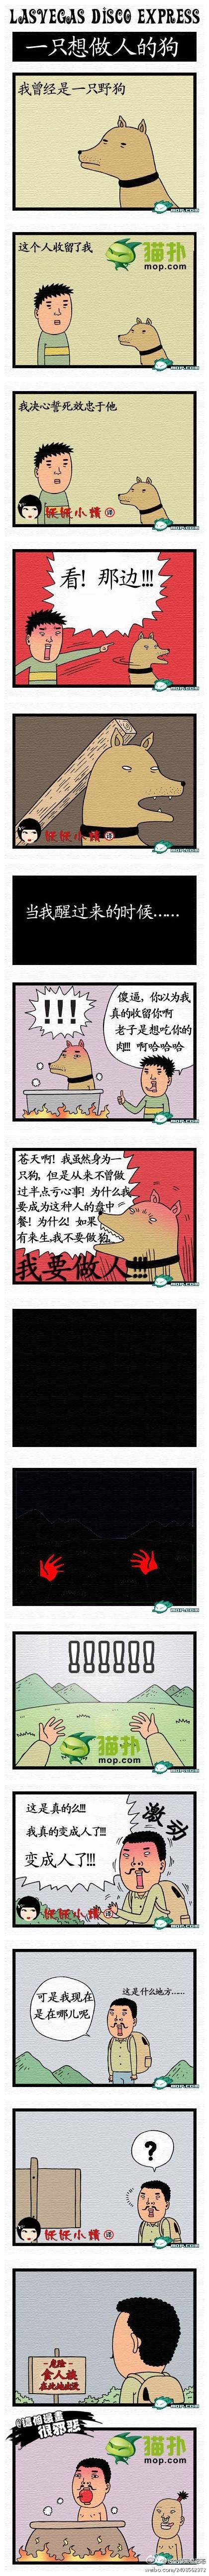 邪恶漫画爆笑囧图第14刊：疯狂的举动